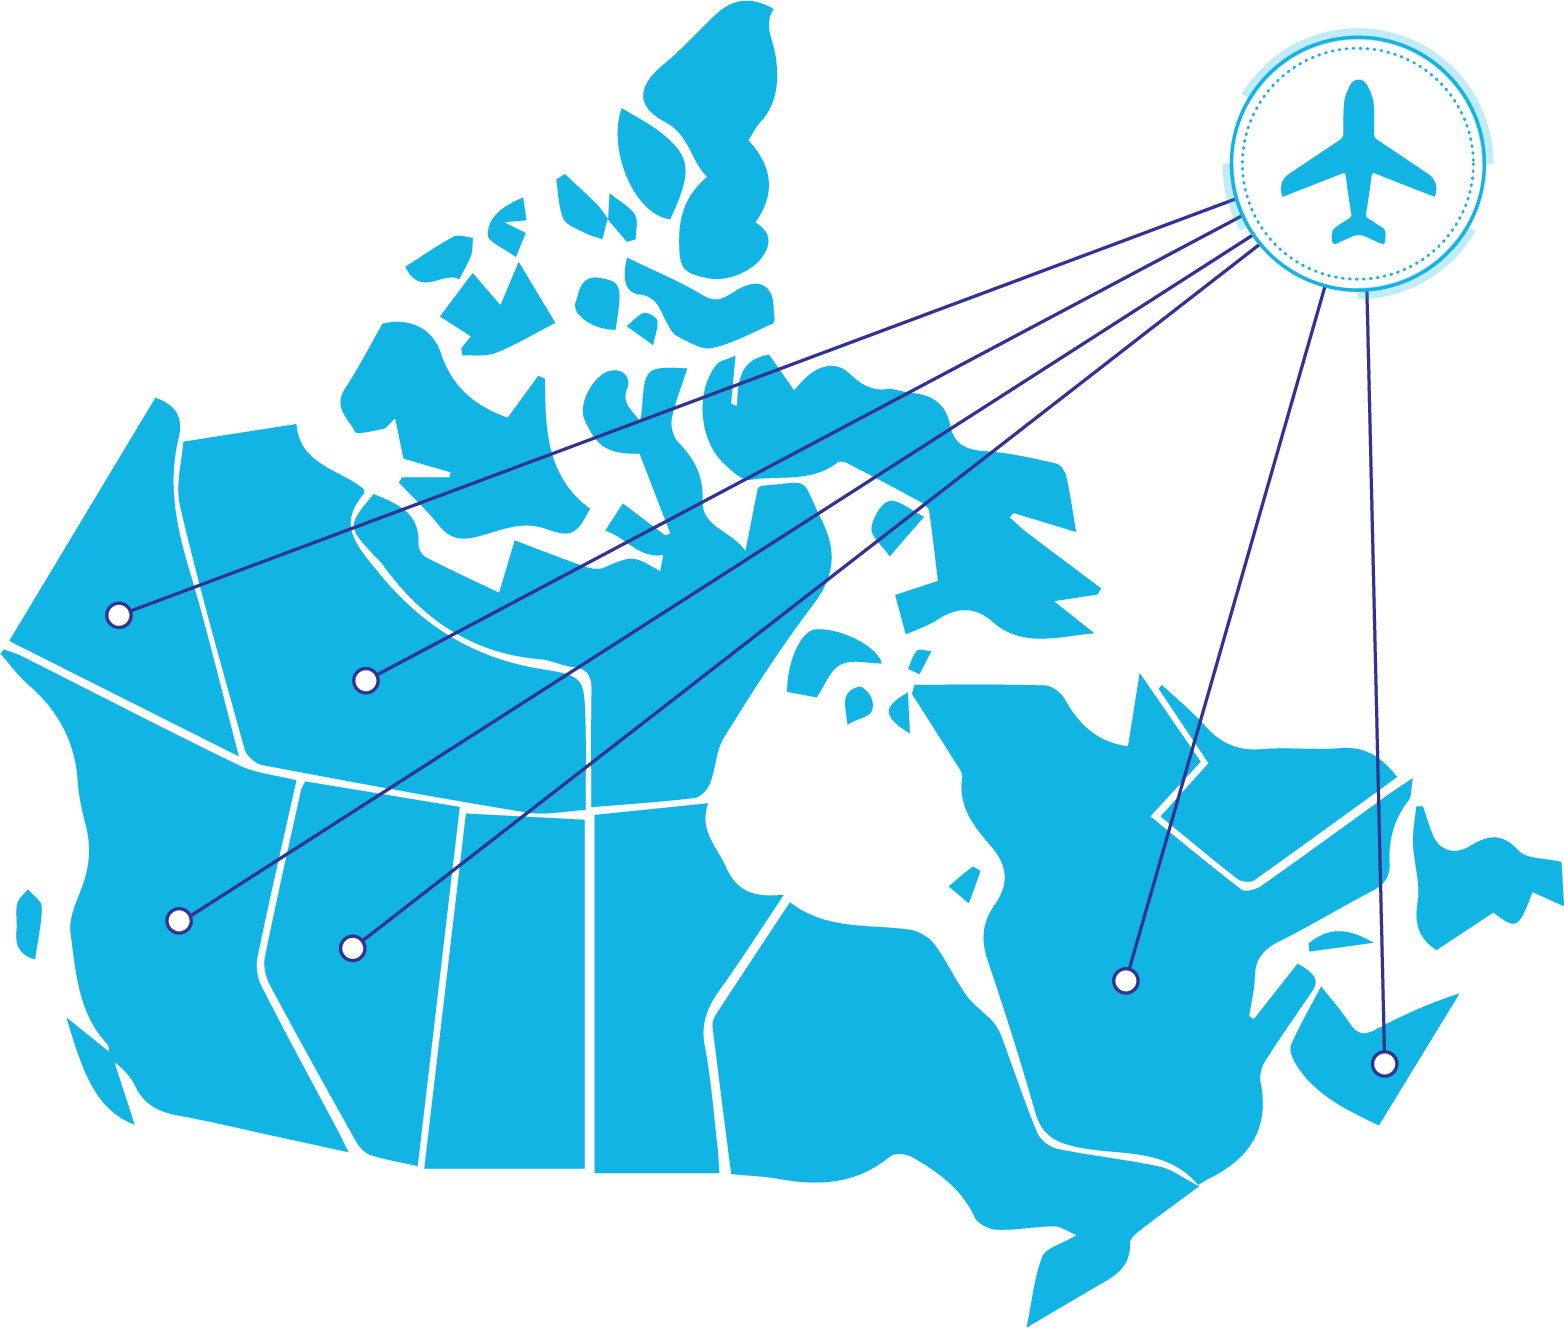 Icône de la carte du Canada avec un symbole graphique d’un avion